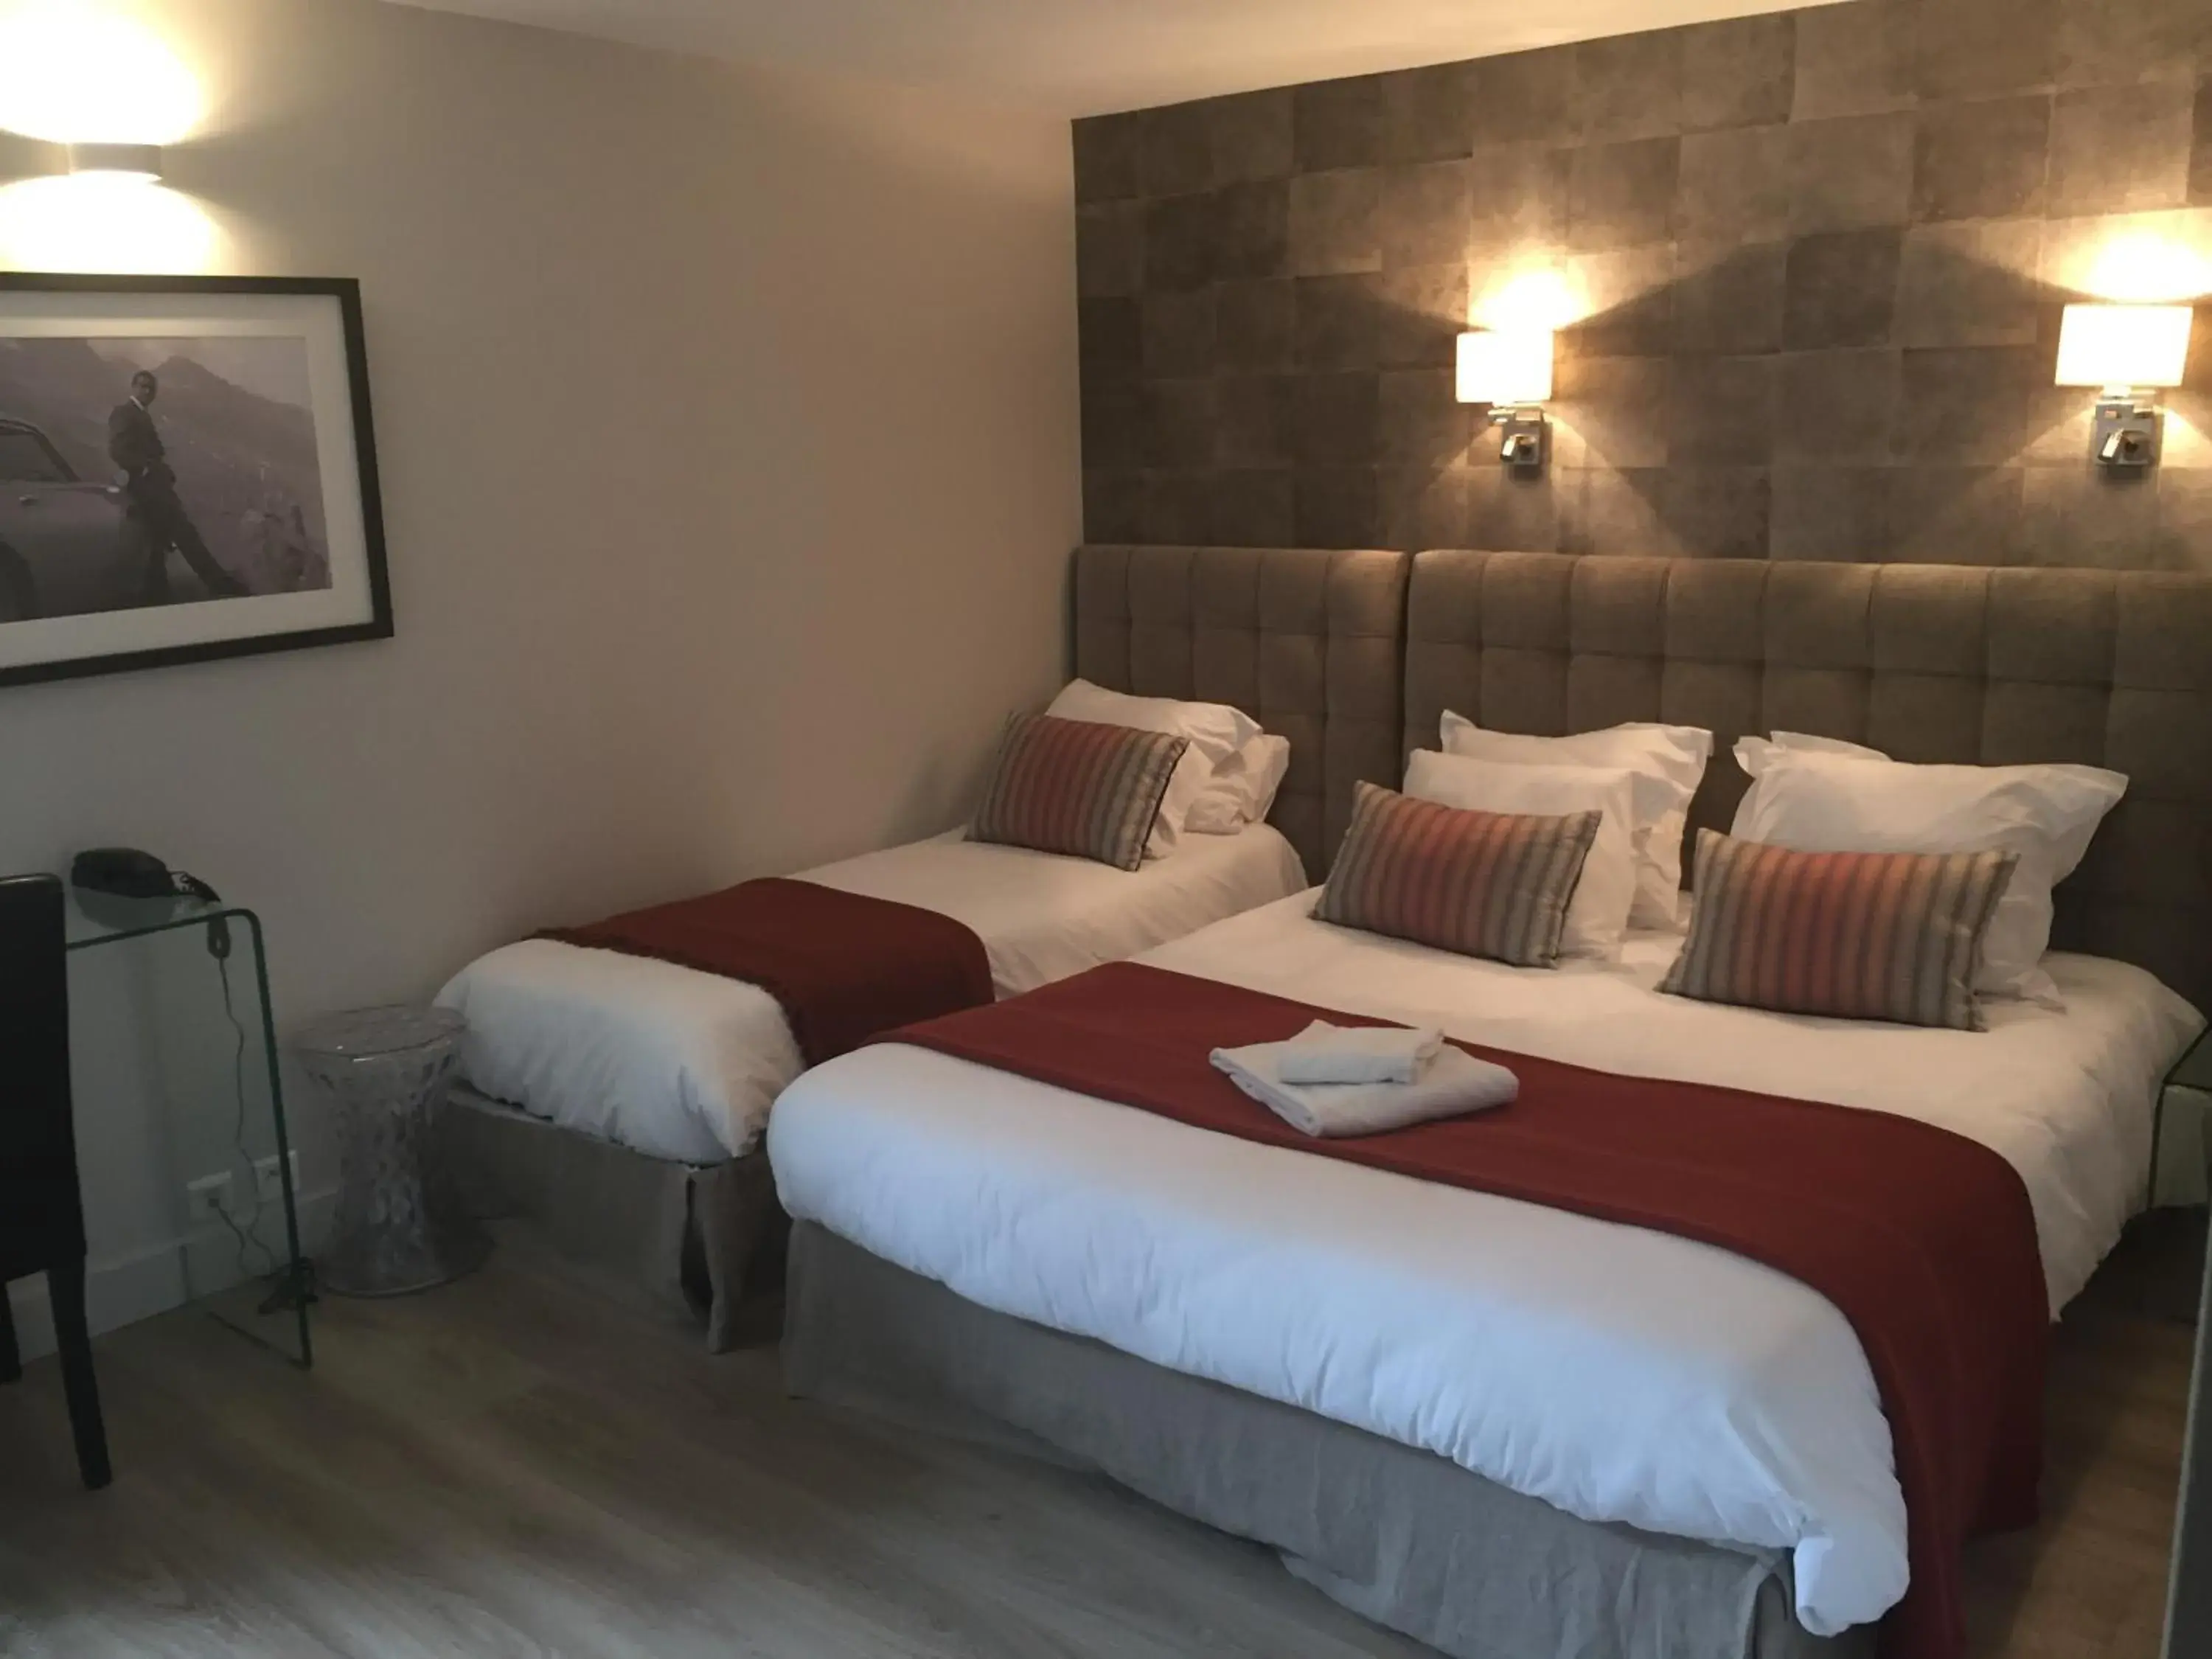 Bedroom, Room Photo in Hotel Acadie Eragny ( ex Comfort Hotel)